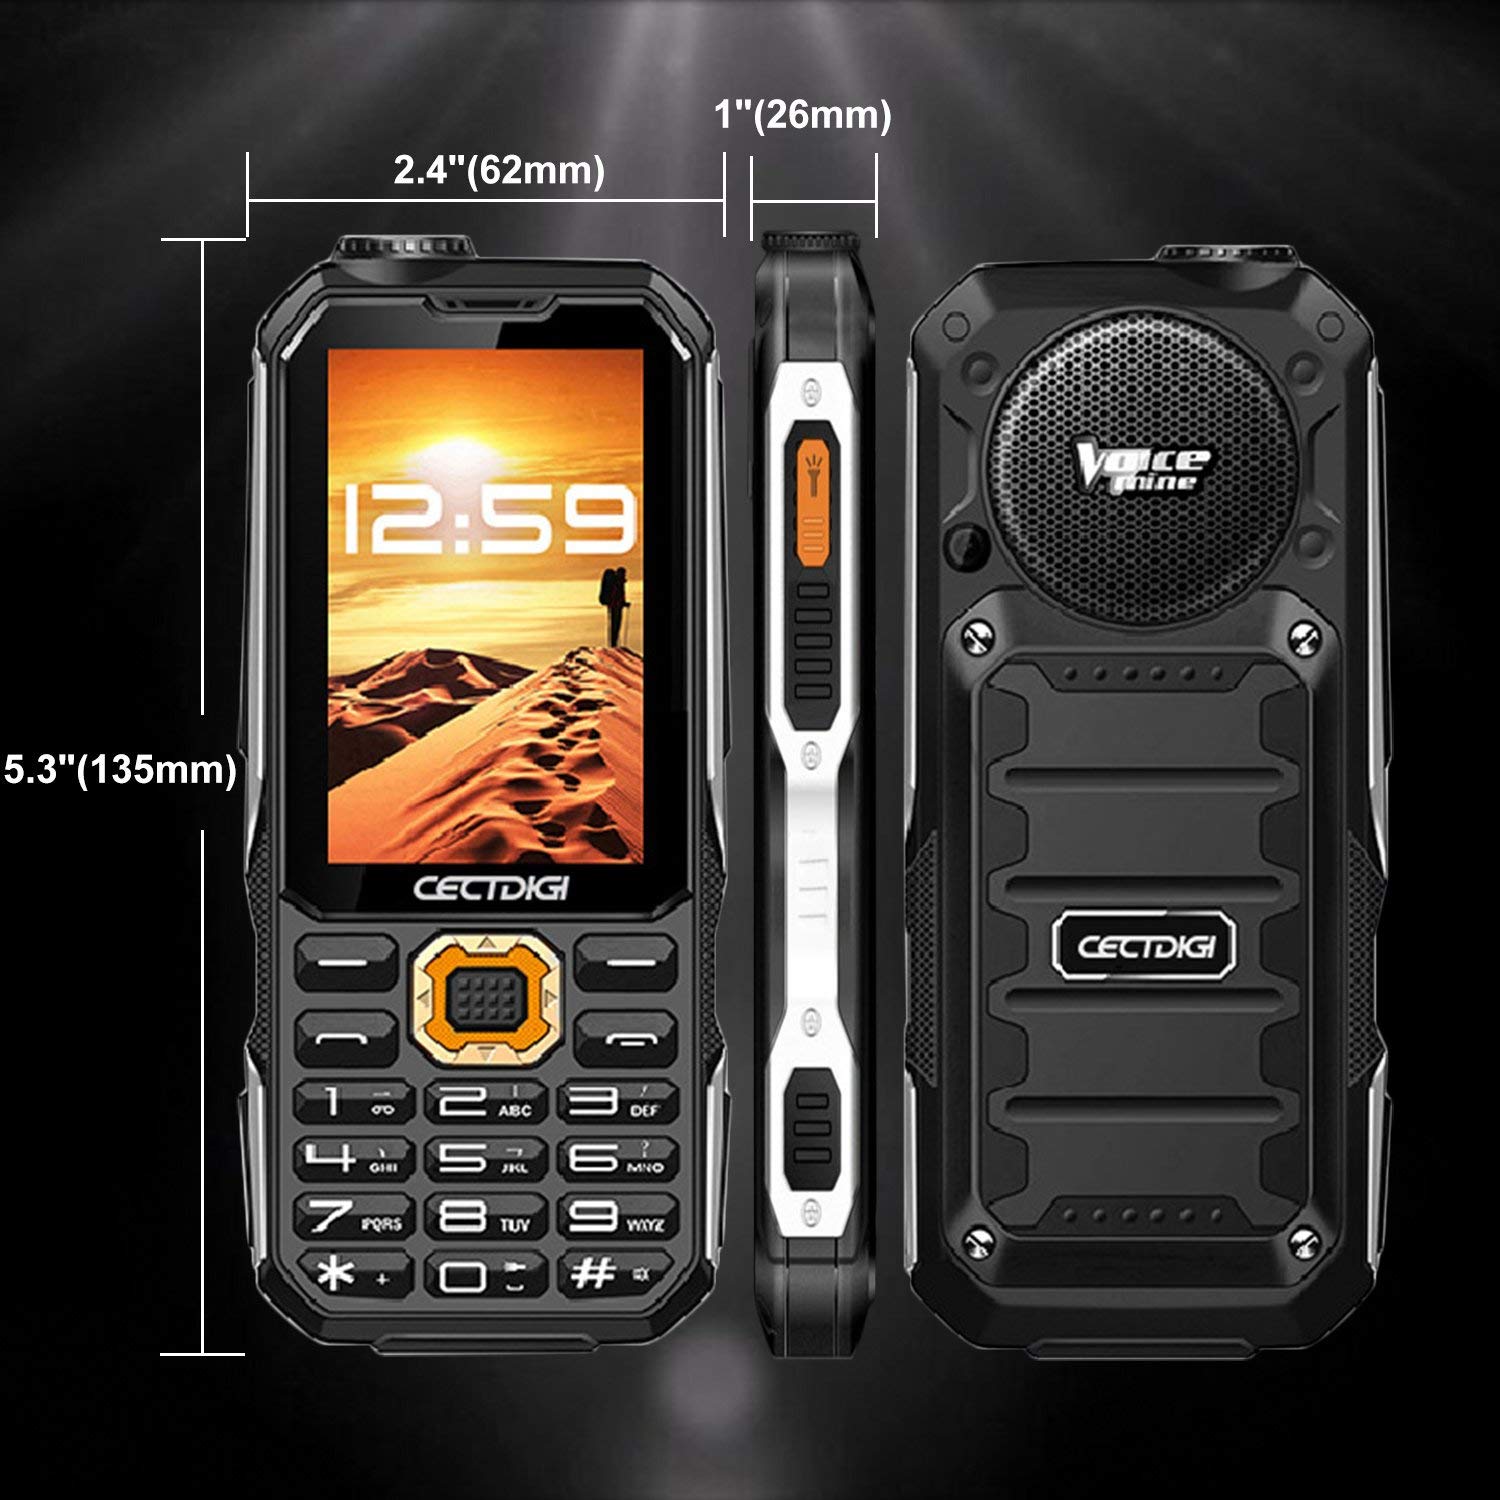 Cectdigi T19 Rugged 2G GSM Mobile Phone,Shockproof MilitaryDesigned